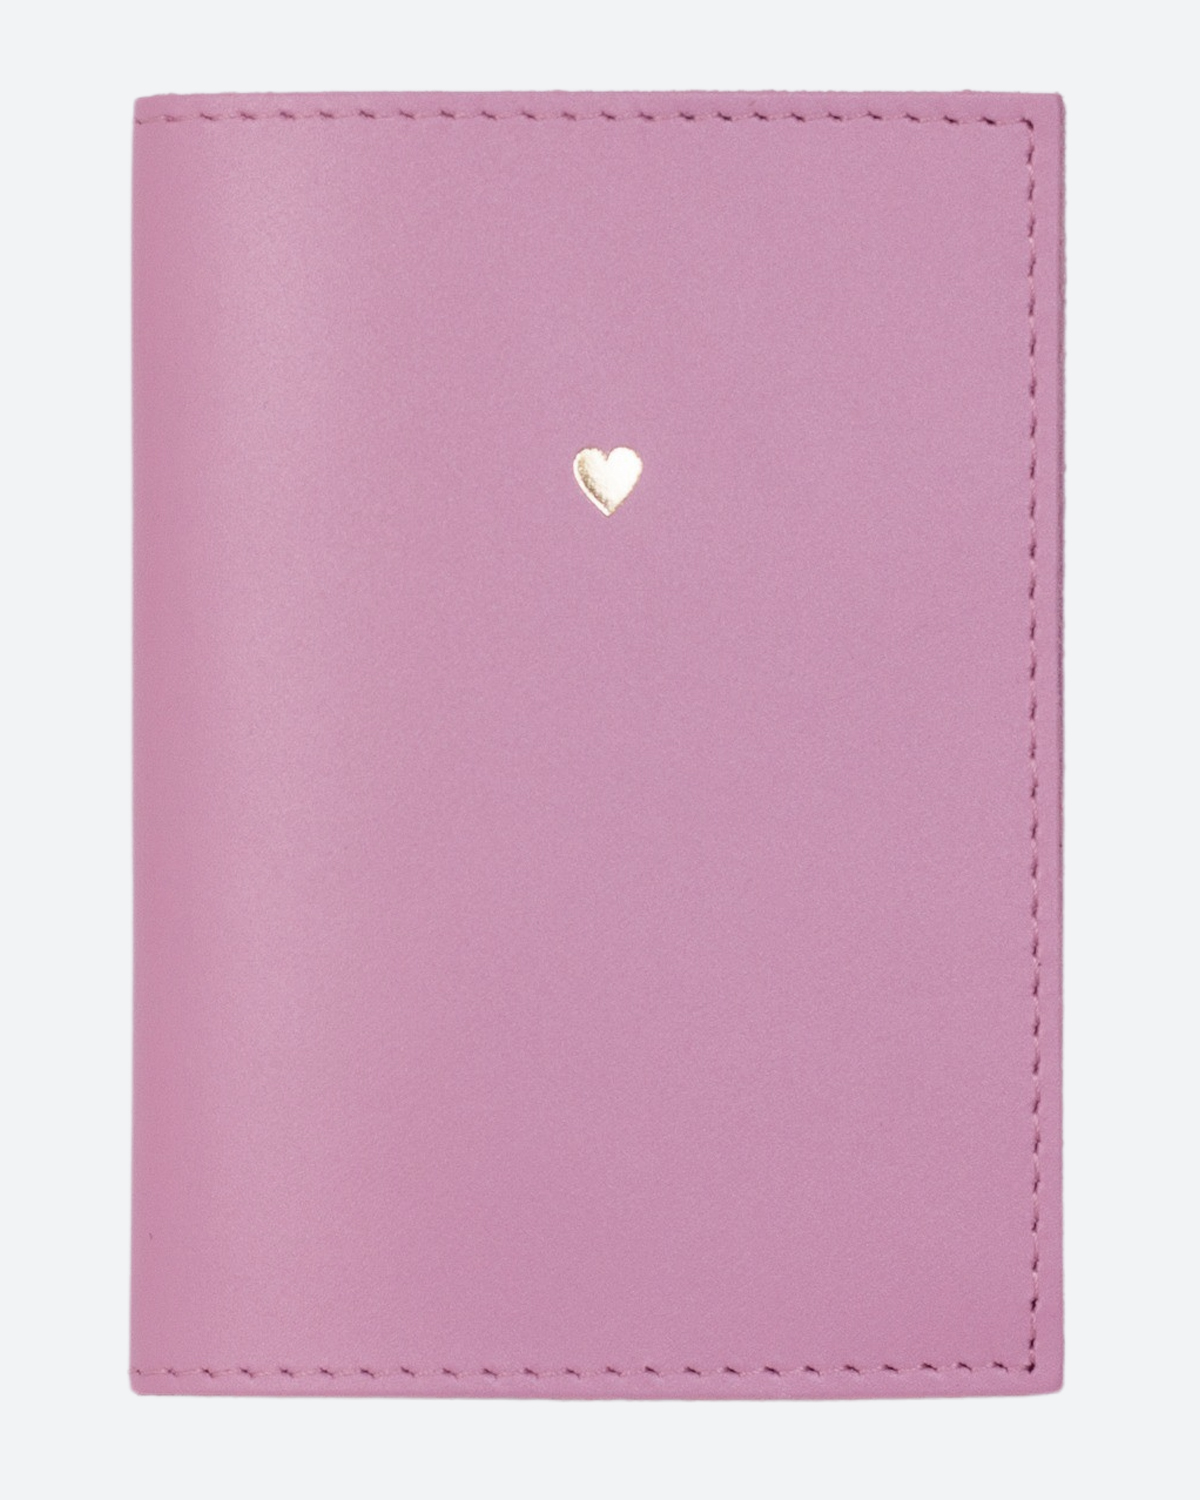 Обложка для паспорта унисекс Kokosina Holderlove, темно-розовая